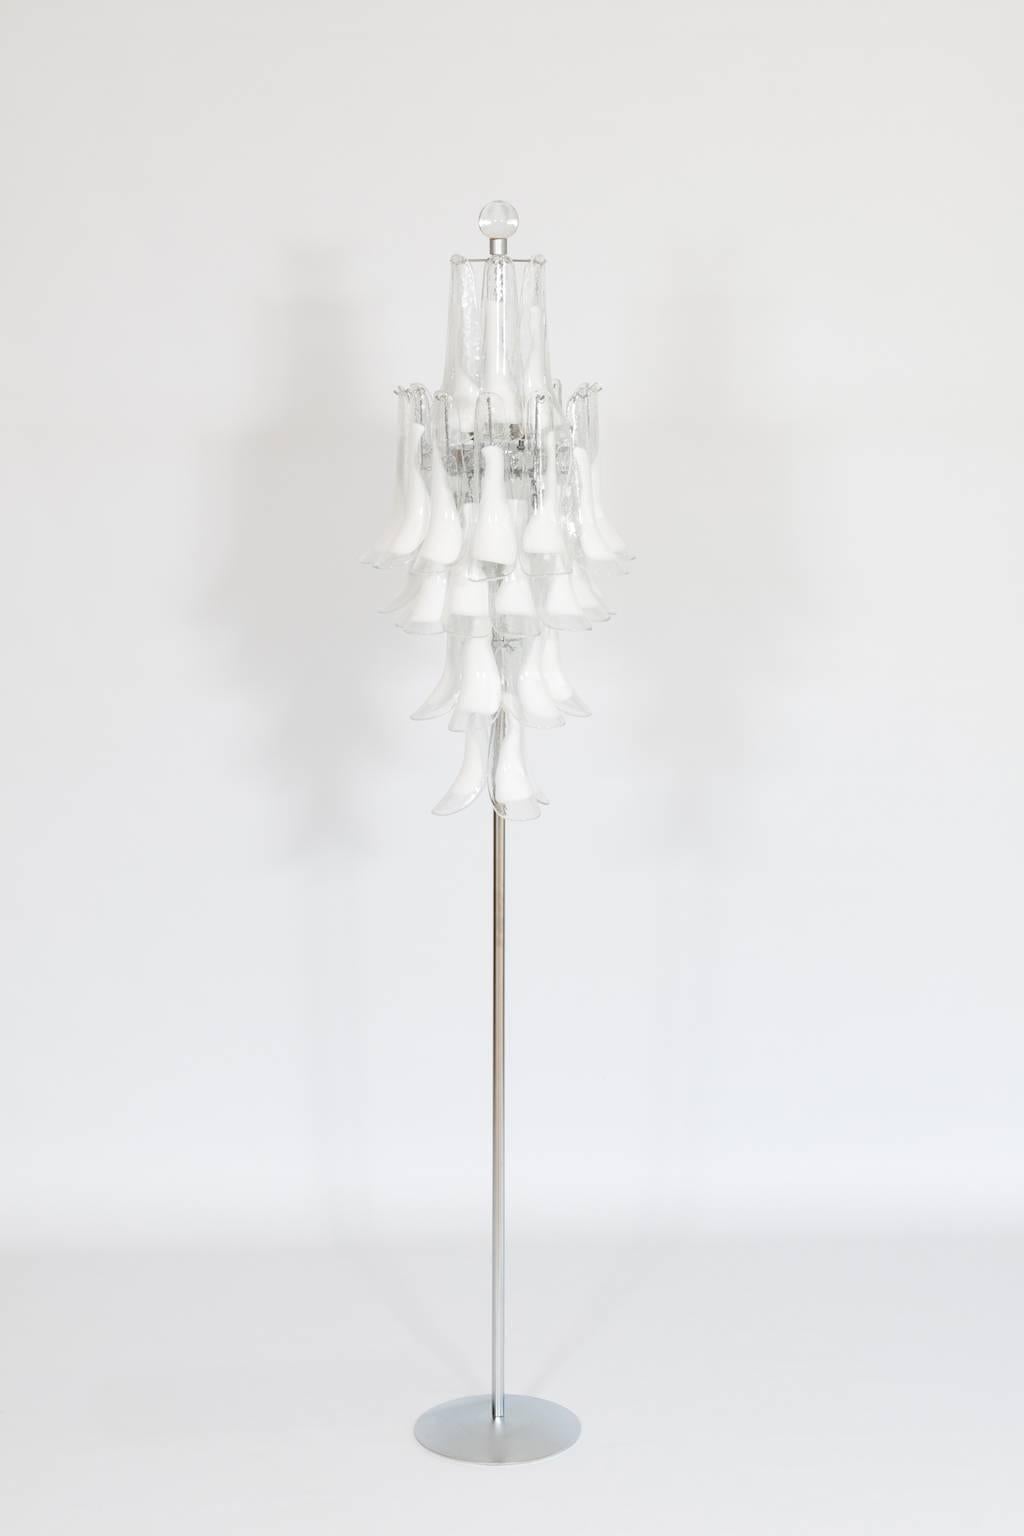 Lampadaire vénitien italien en verre de Murano blanc, composé d'éléments blancs disposés à différents niveaux, le tout est soutenu par un cadre chromé à six lumières, avec au-dessus une sphère en verre. Le tout est en très excellent état d'origine,